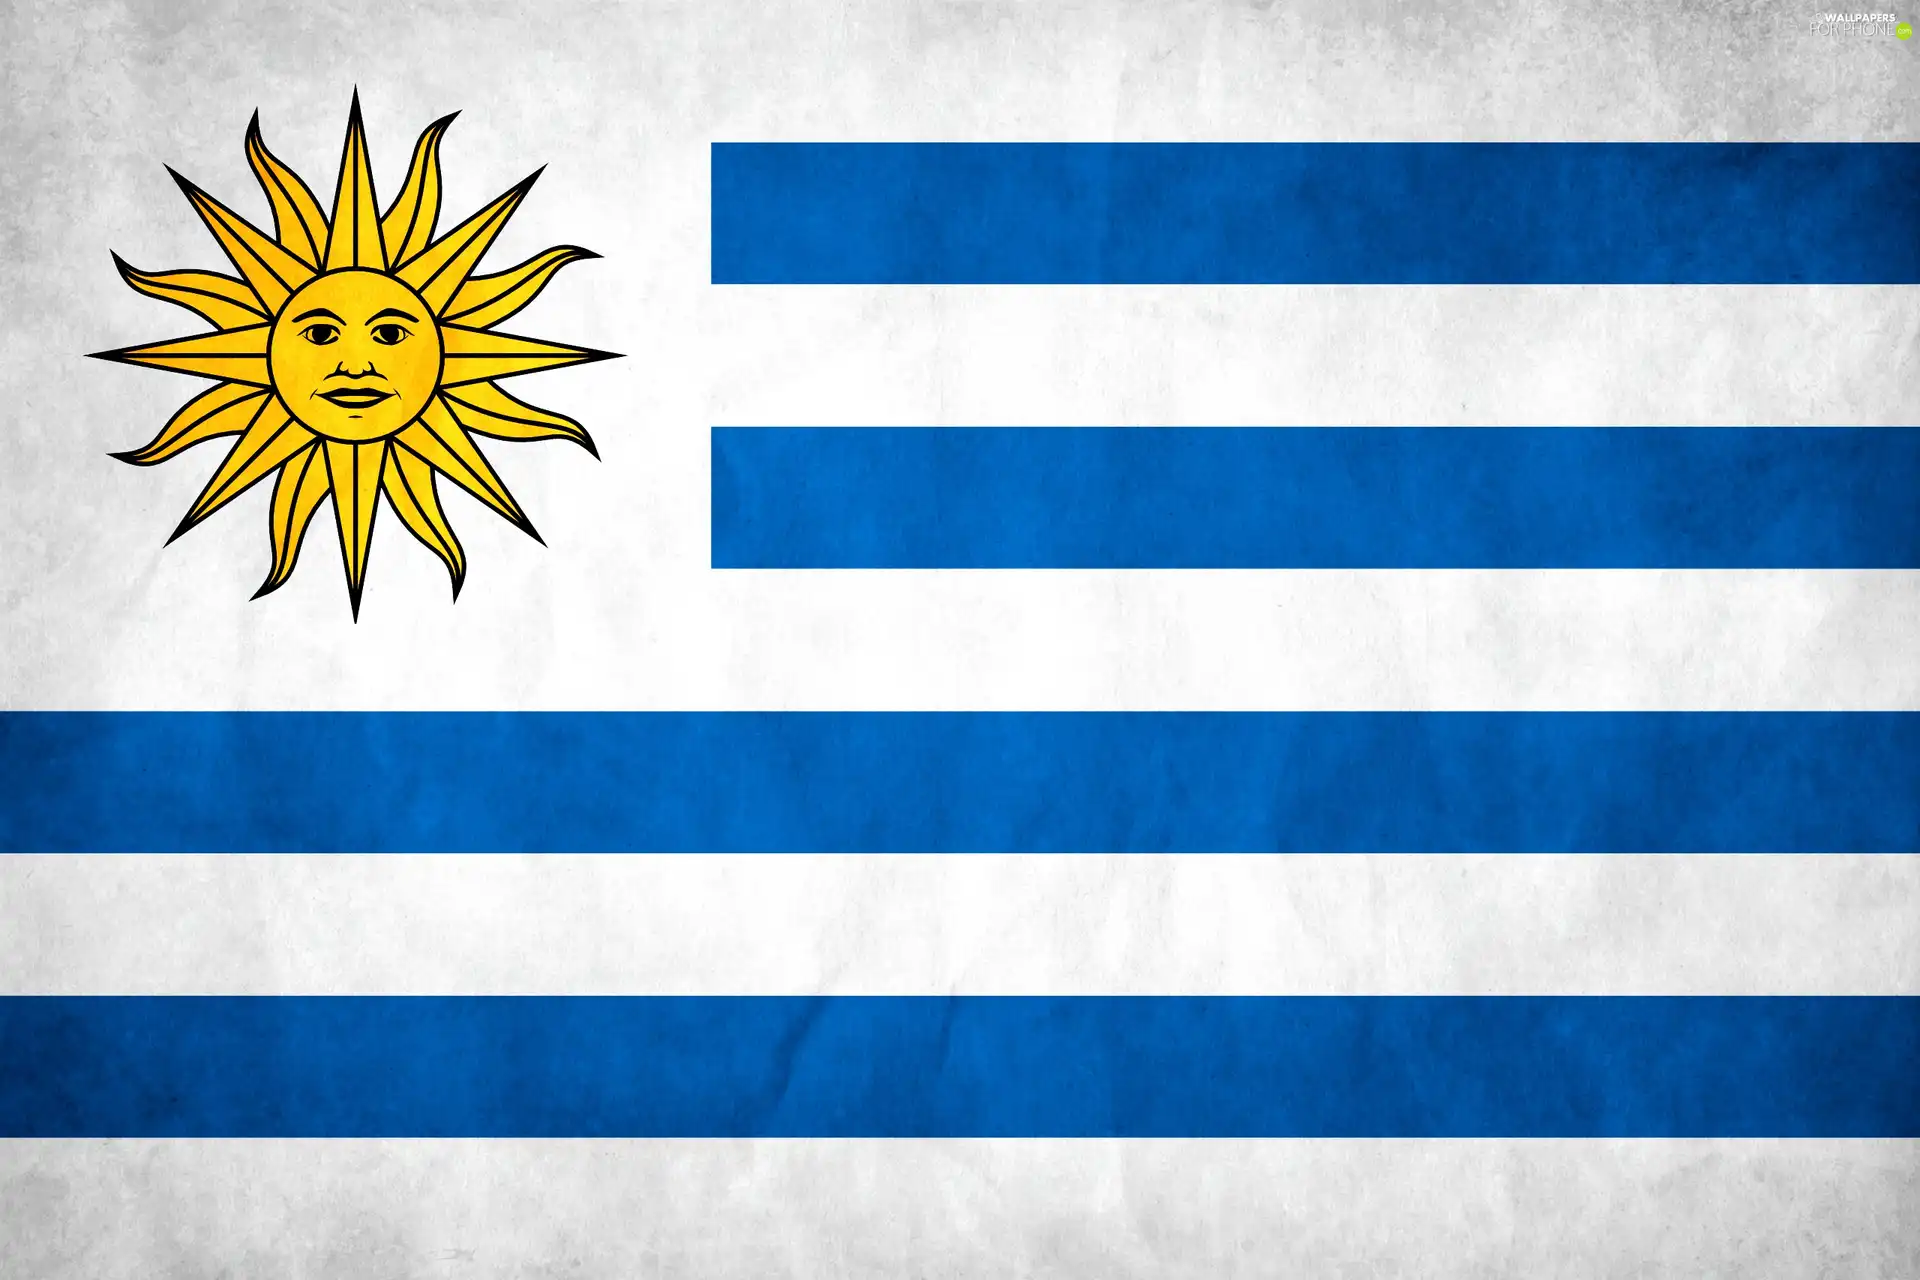 Uruguay, flag, Member